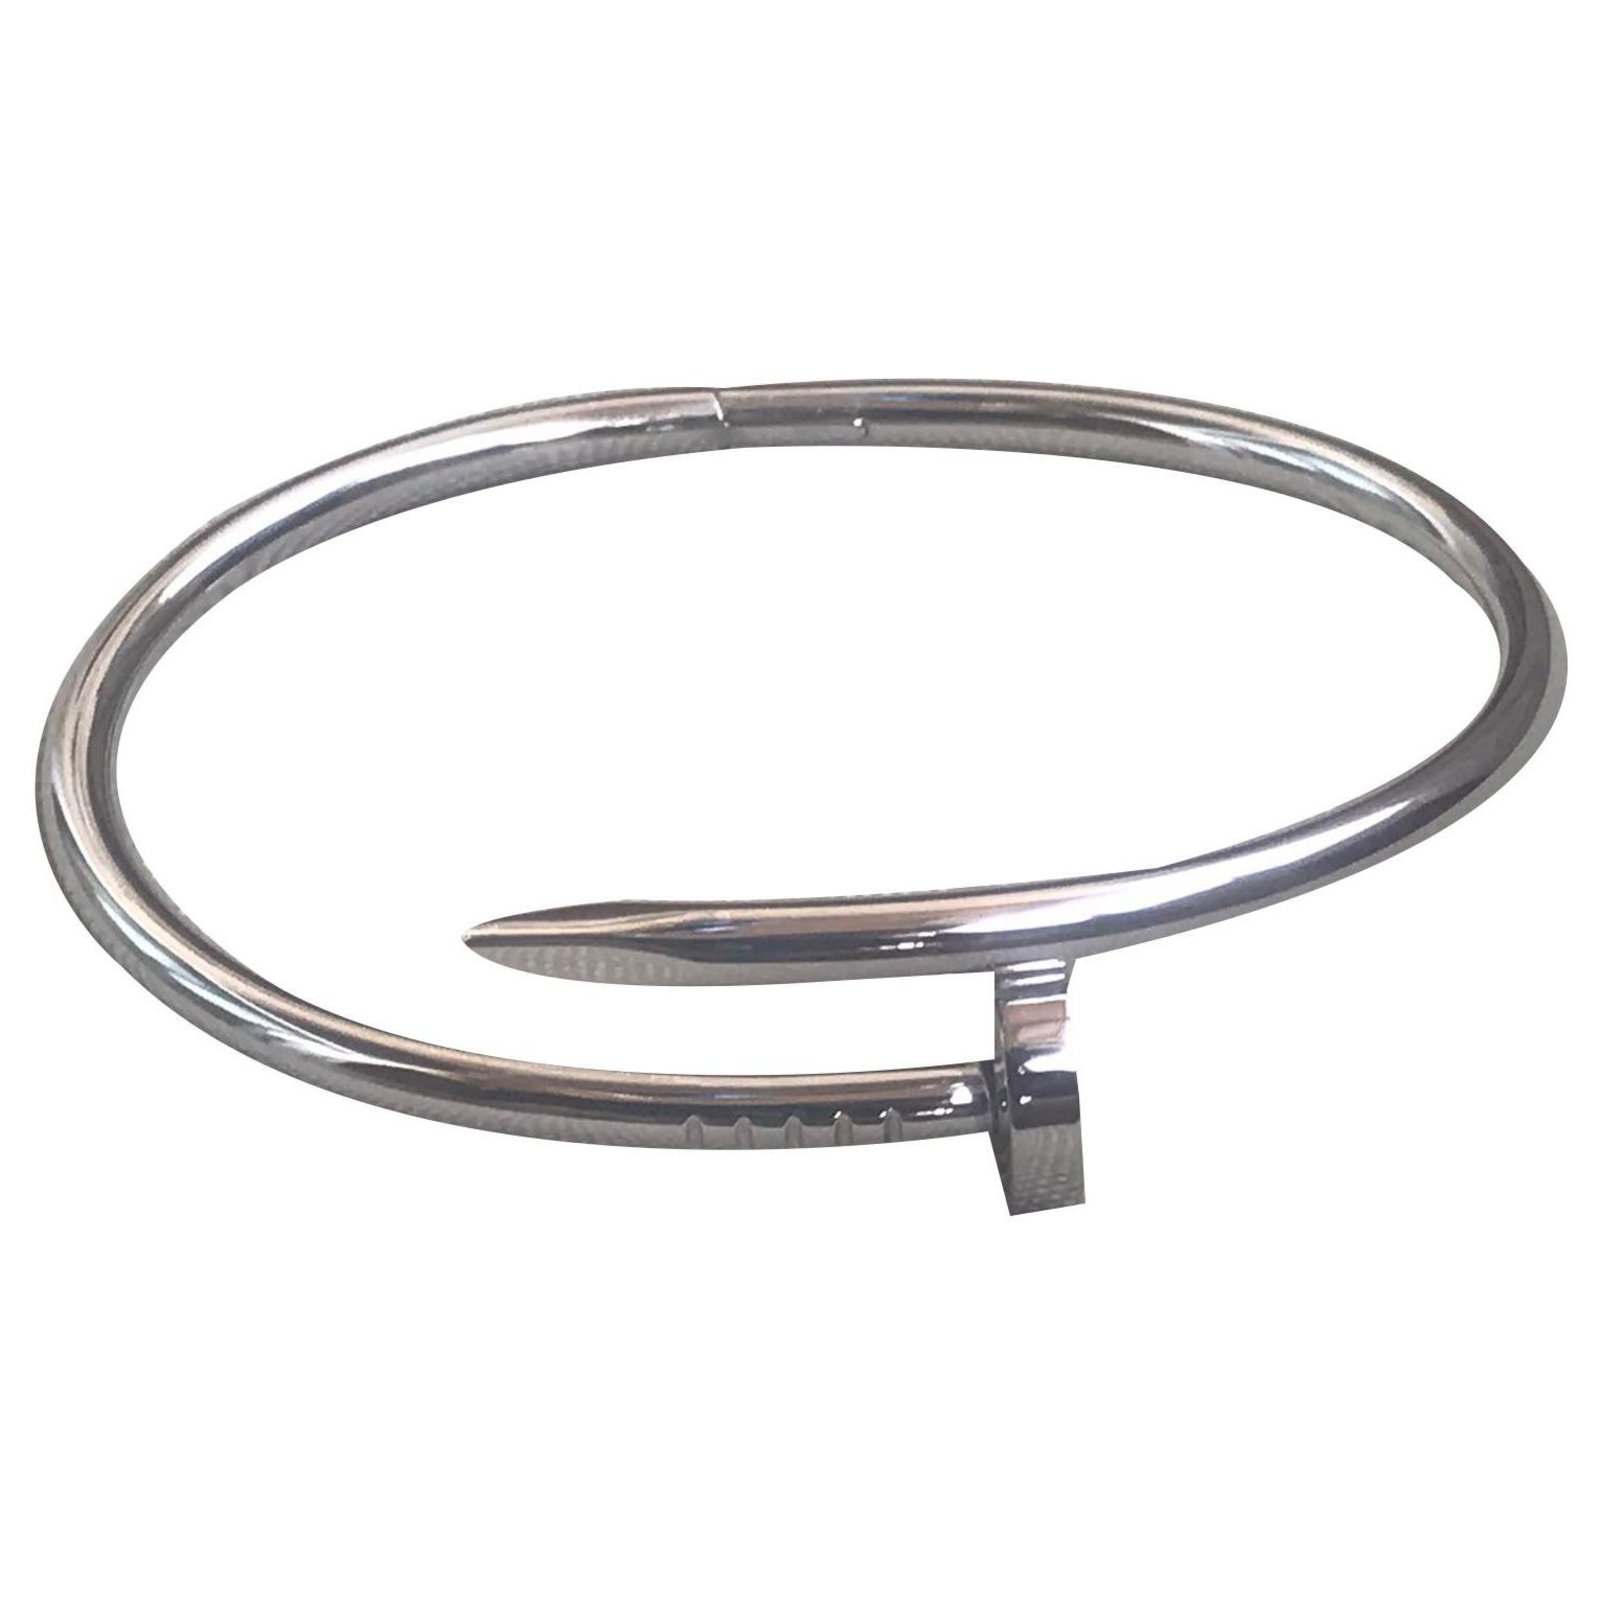 cartier cable bracelet